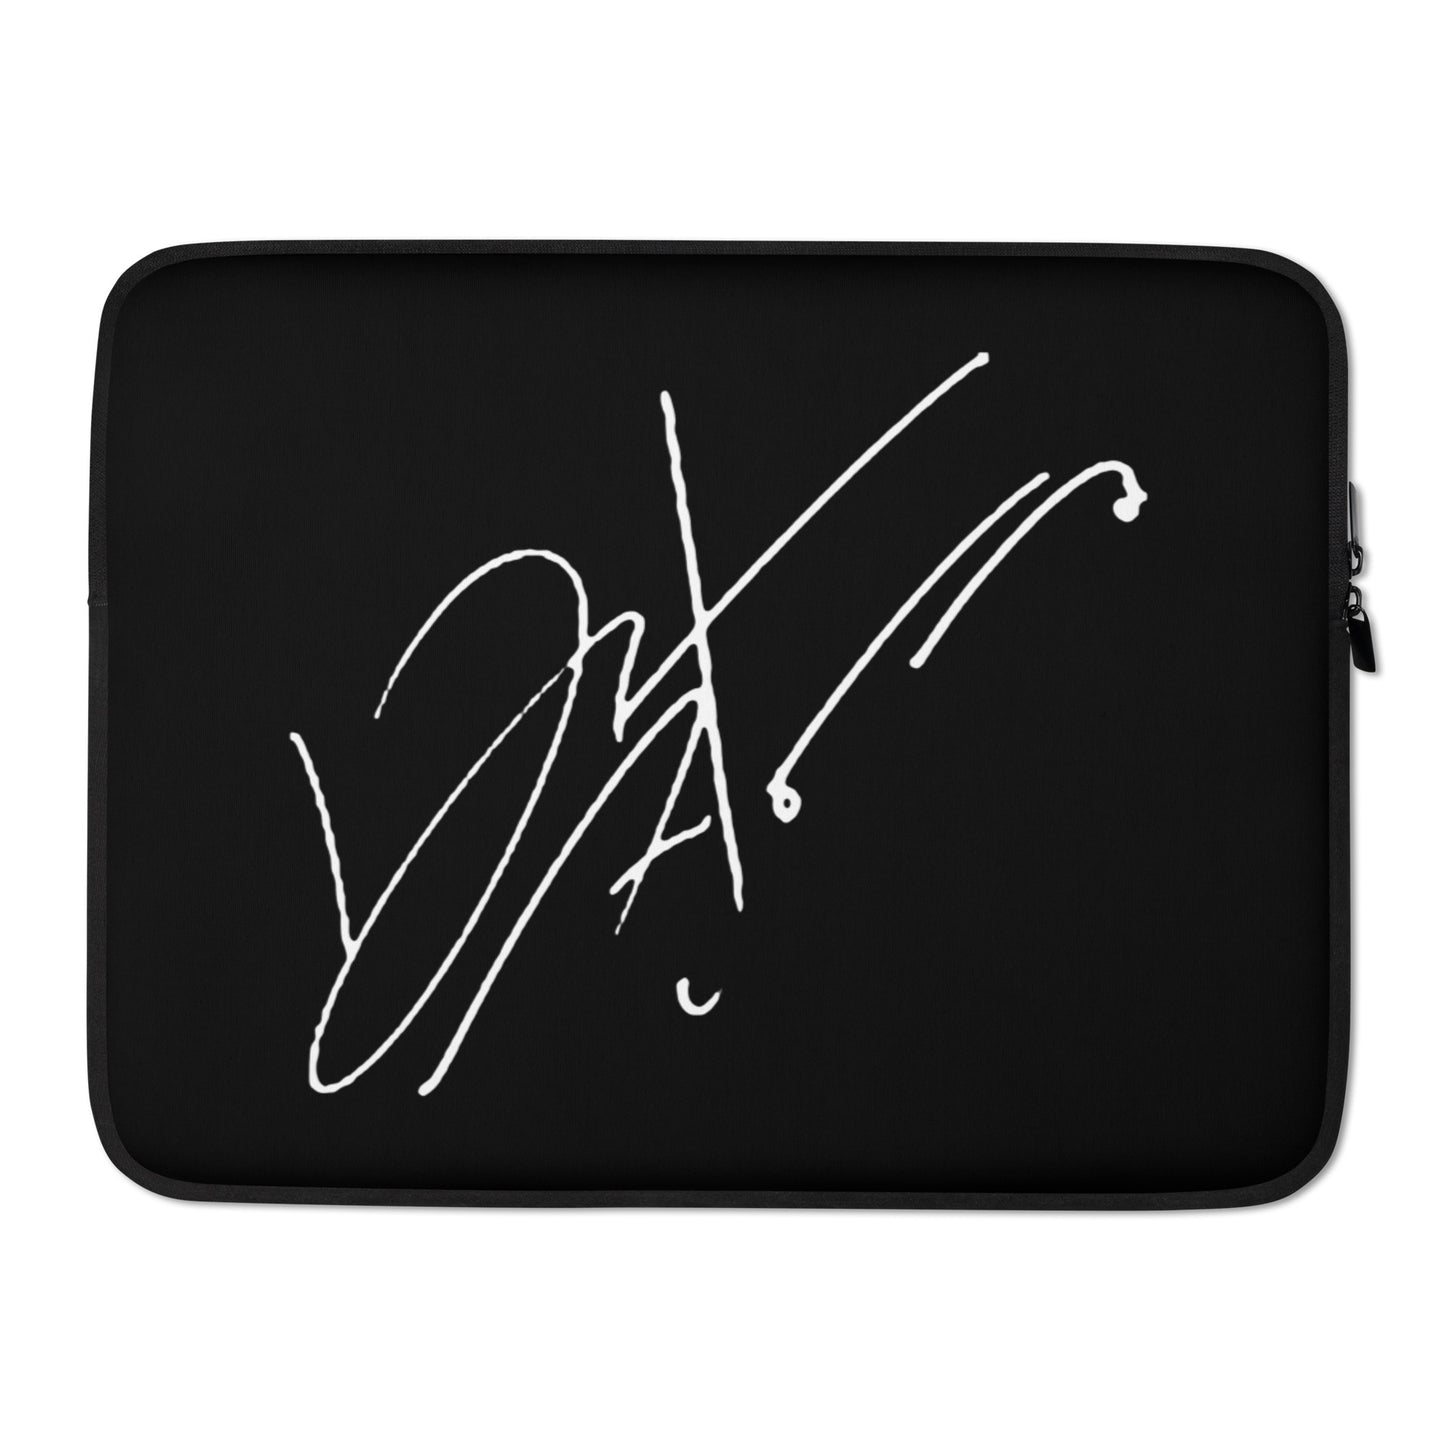 GOT7 Jinyoung, Park Jin-young Signature Laptop MacBook Sleeve